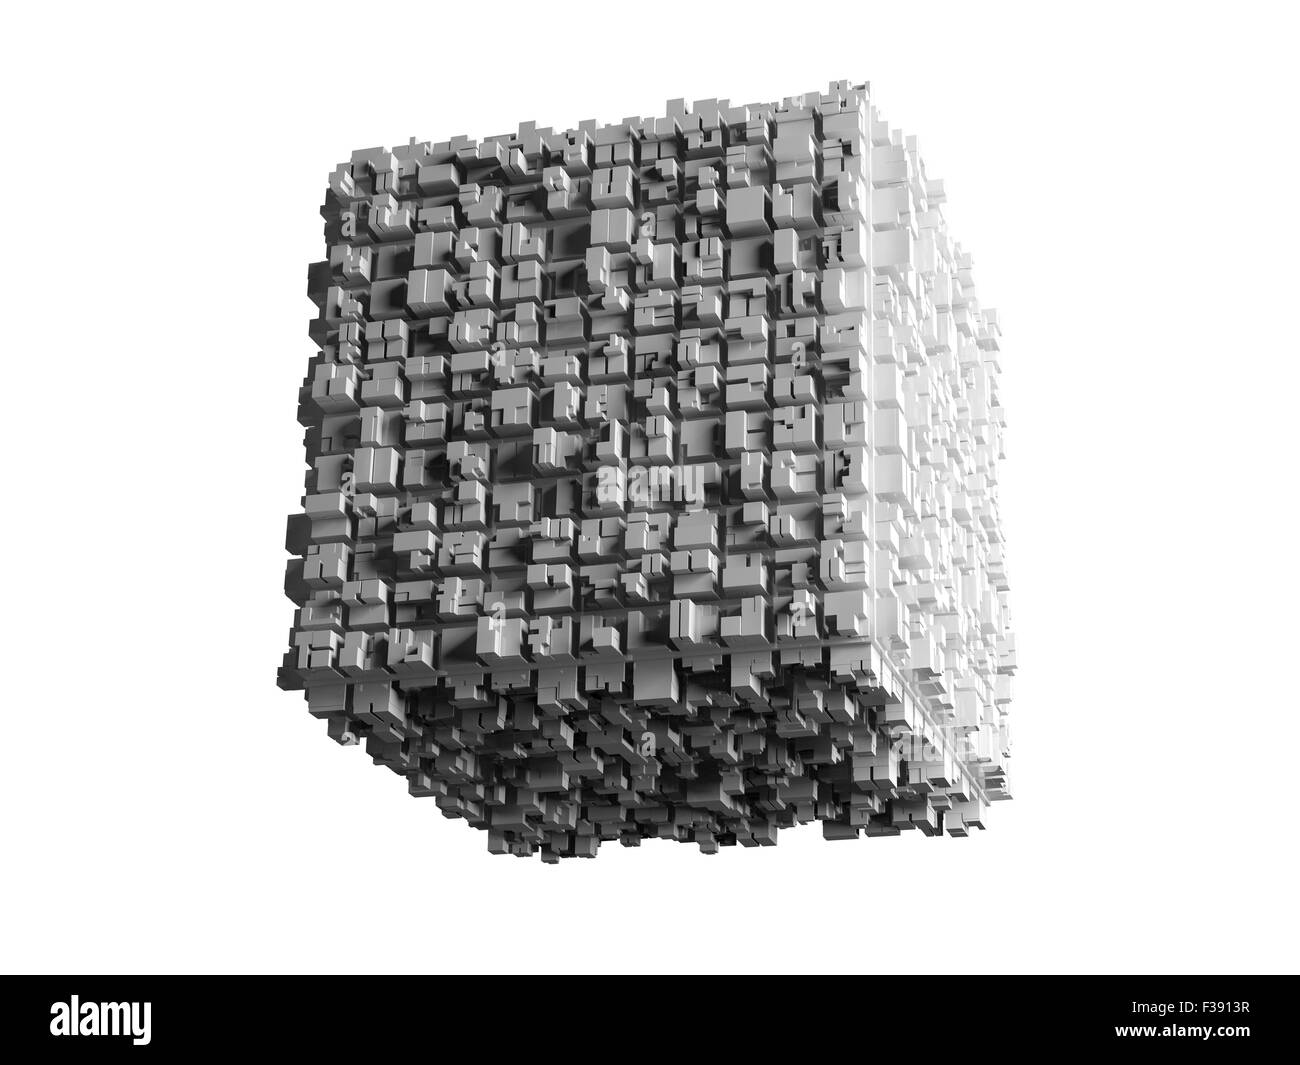 Cube blanc : 1 497 711 images, photos de stock, objets 3D et